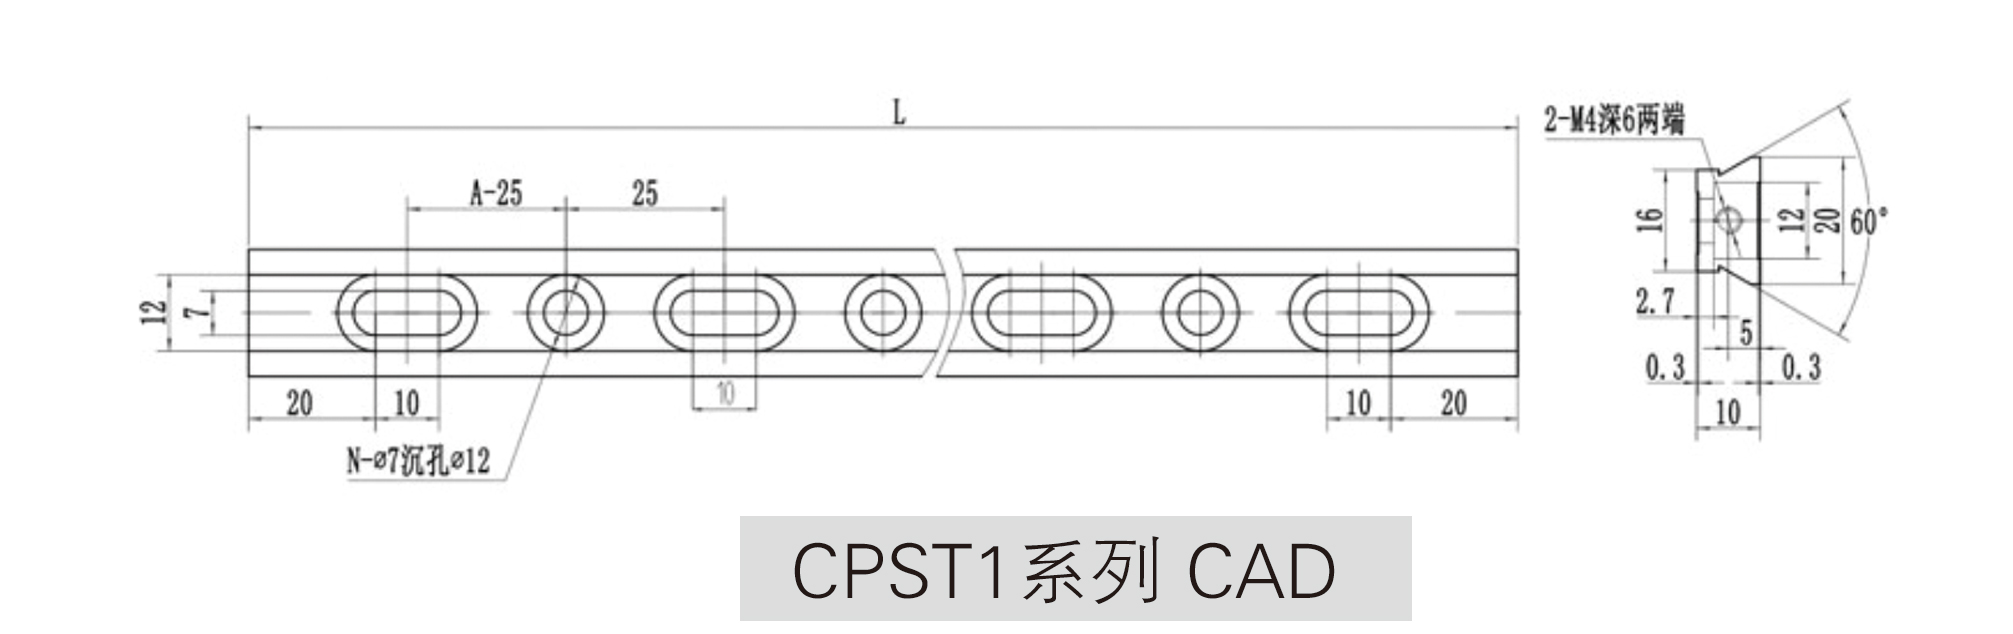 CPST1系列光学滑轨CAD